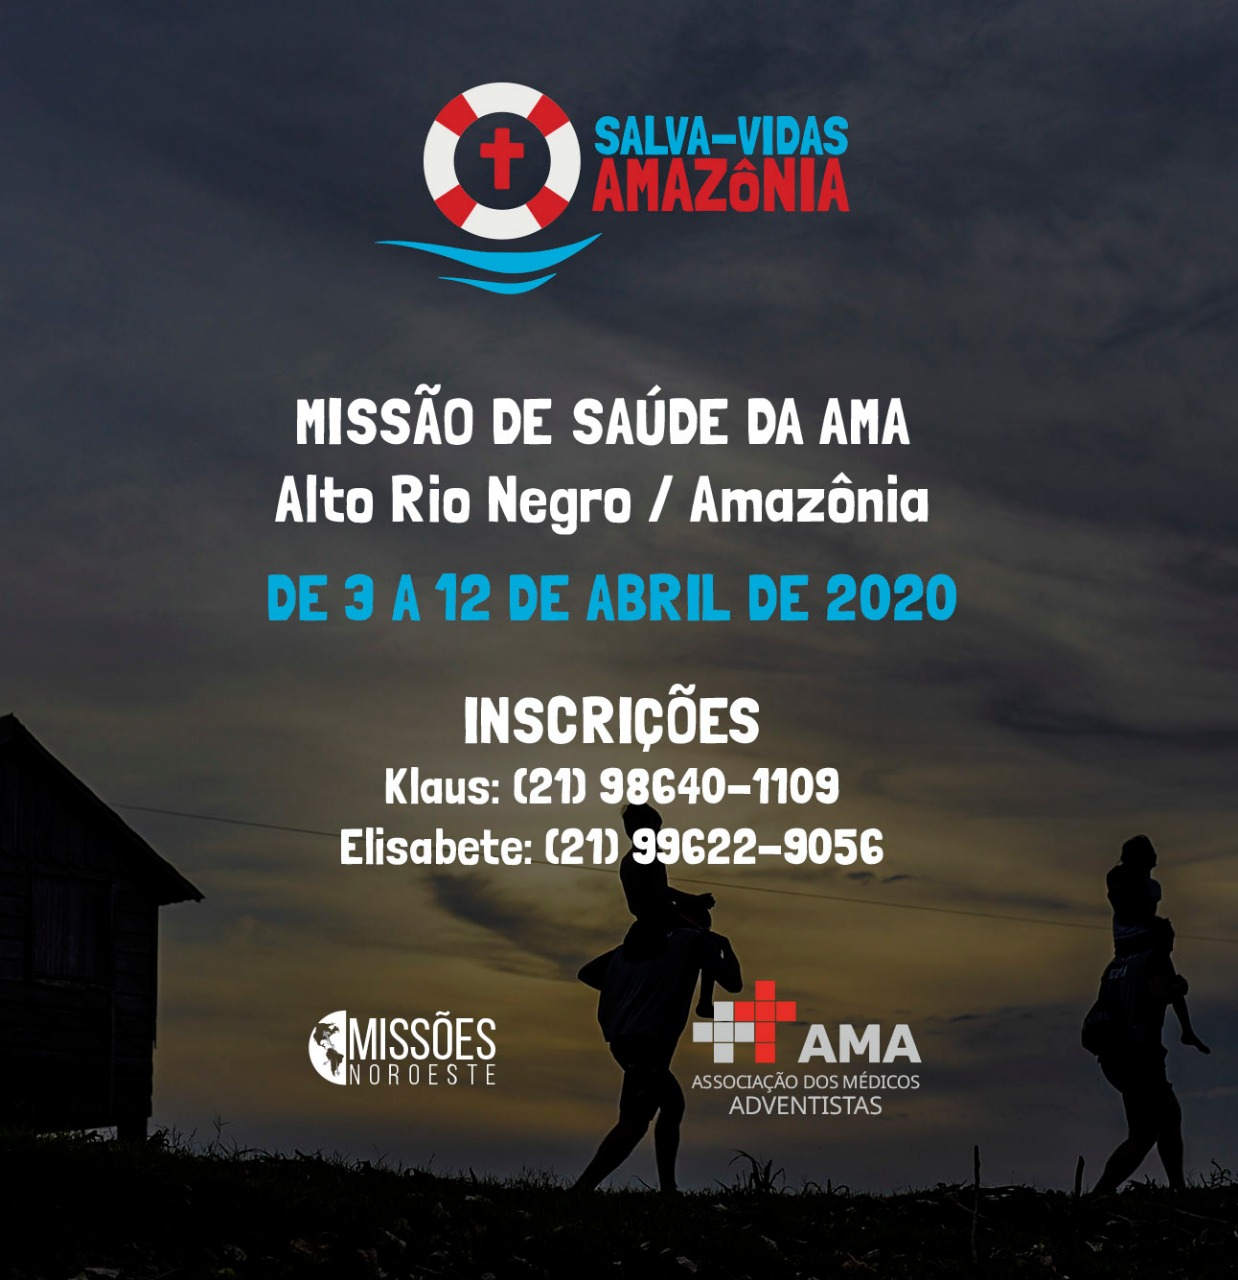 Missão de Saúde da AMA – Alto Rio Negro / Amazônia